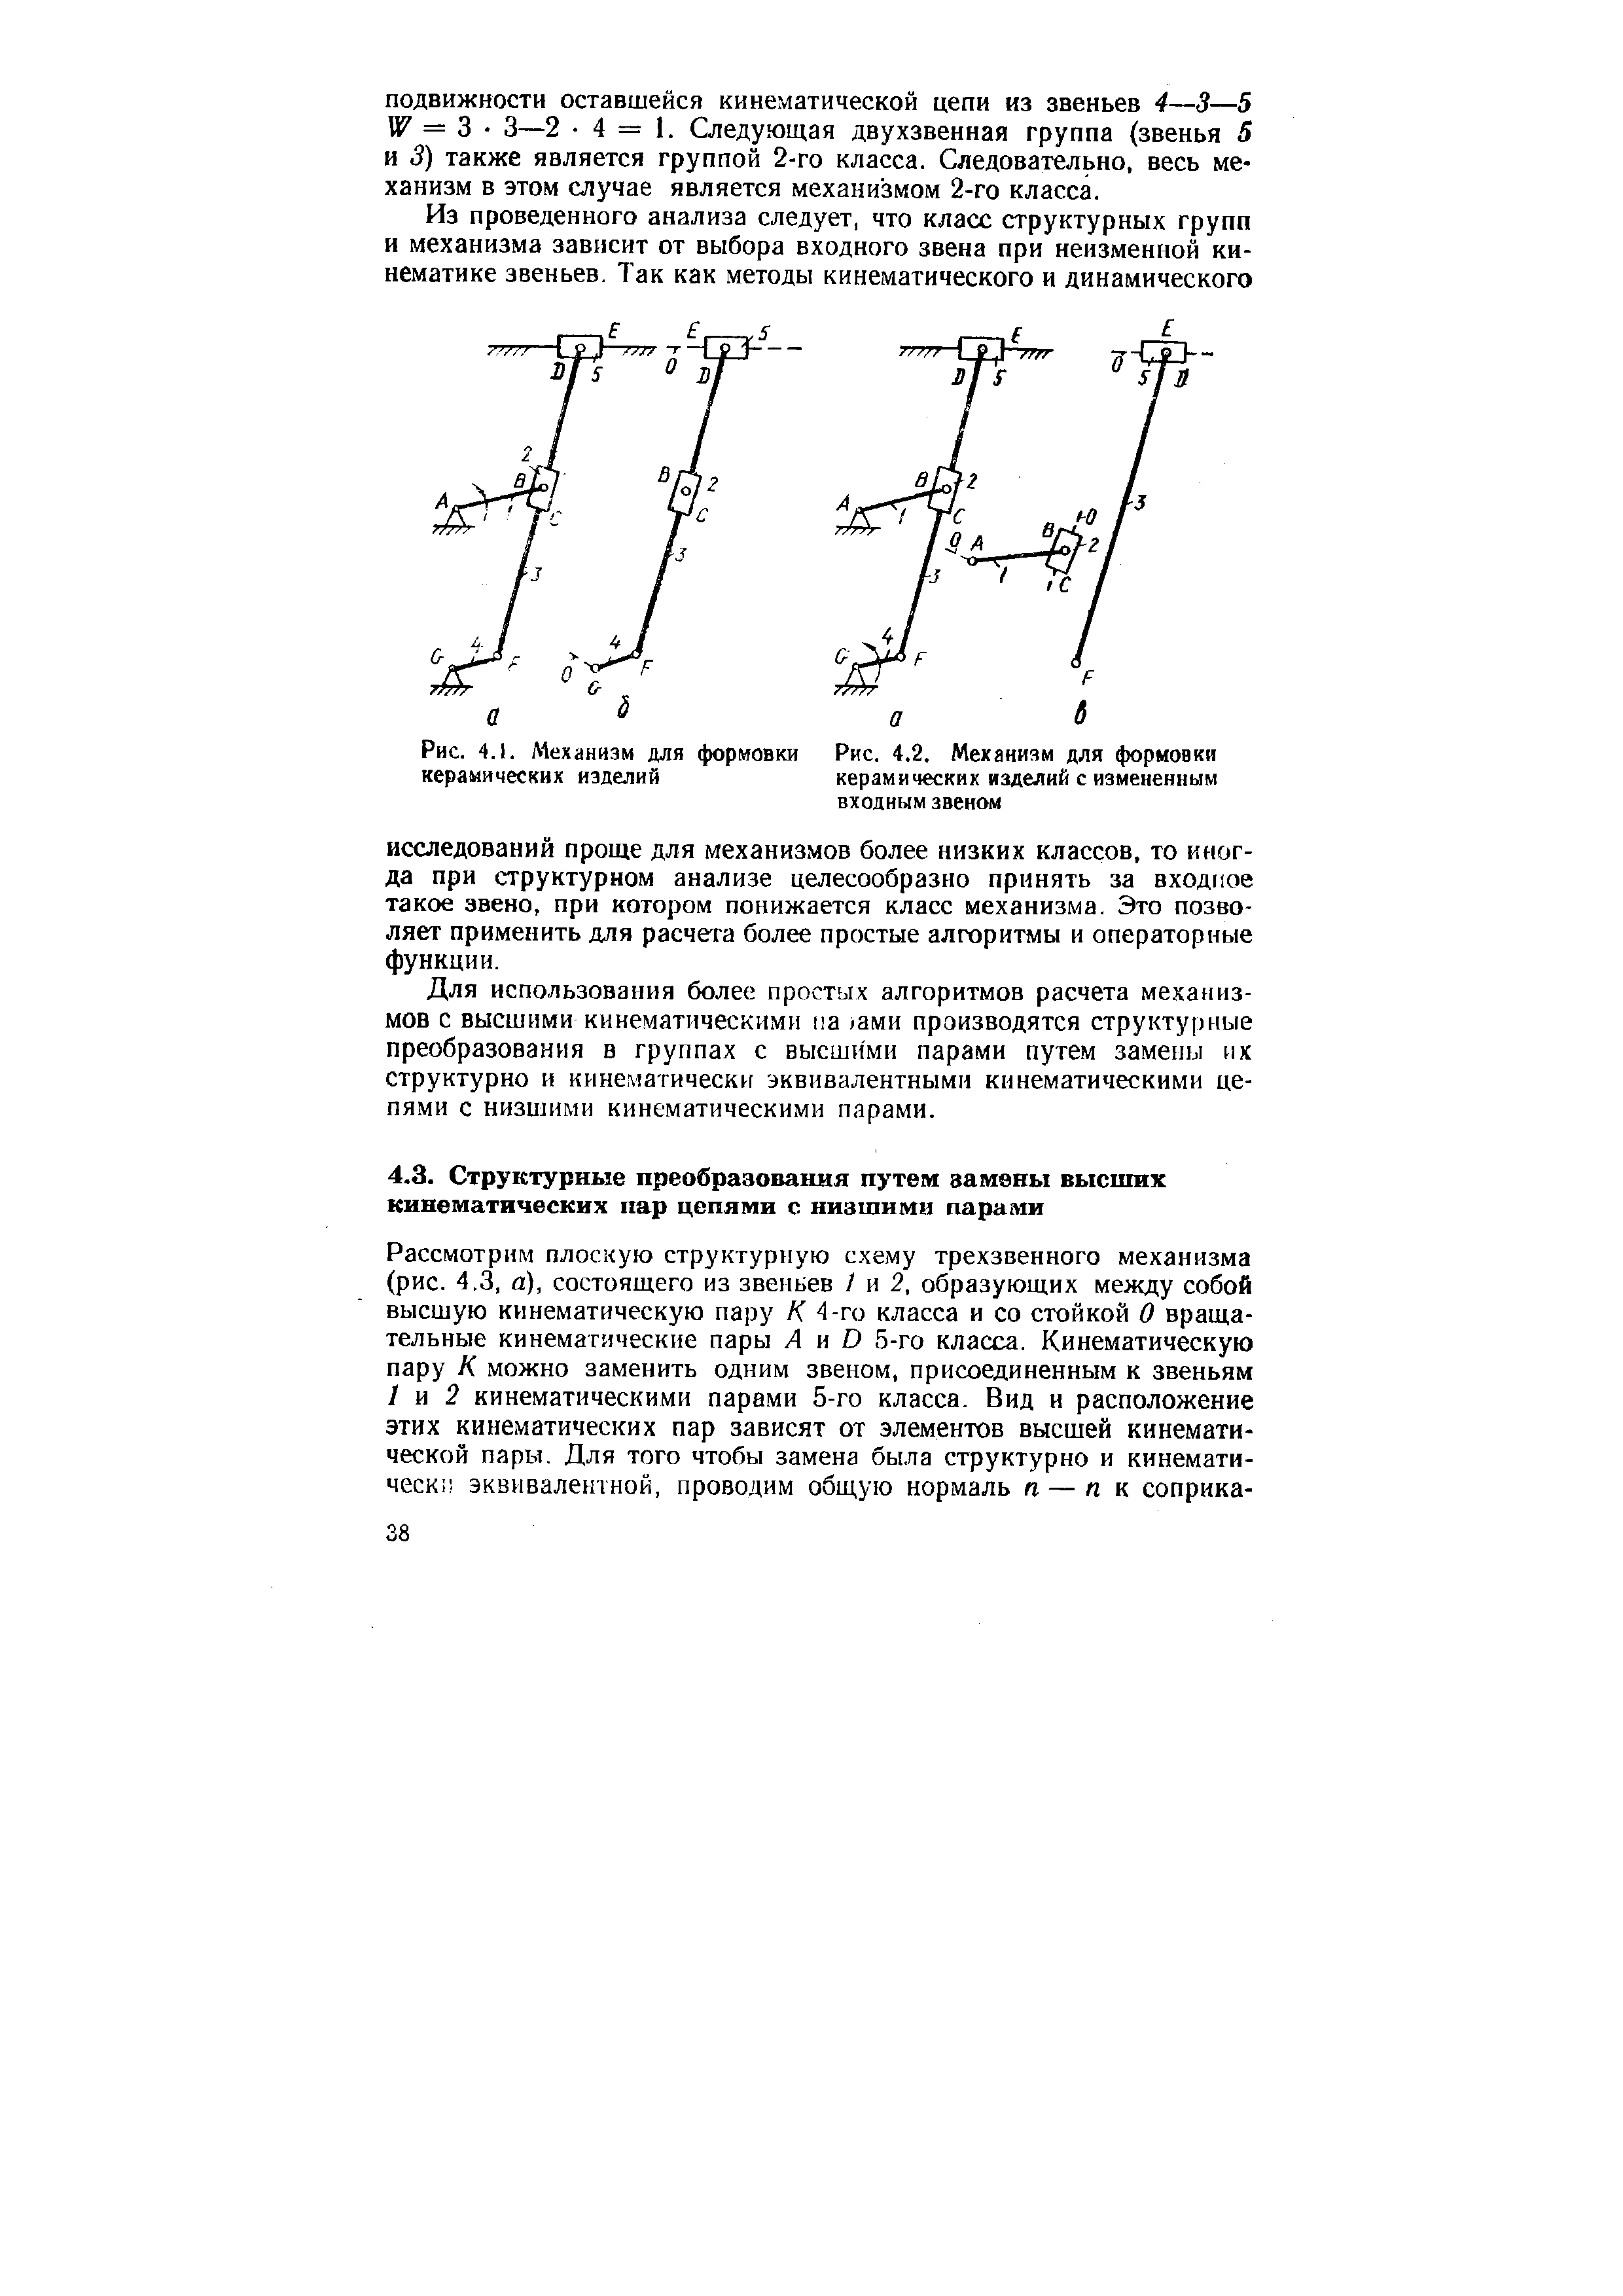 Рис. 4.2. Механизм для формовки керамических изделий с измененным входным звеном
